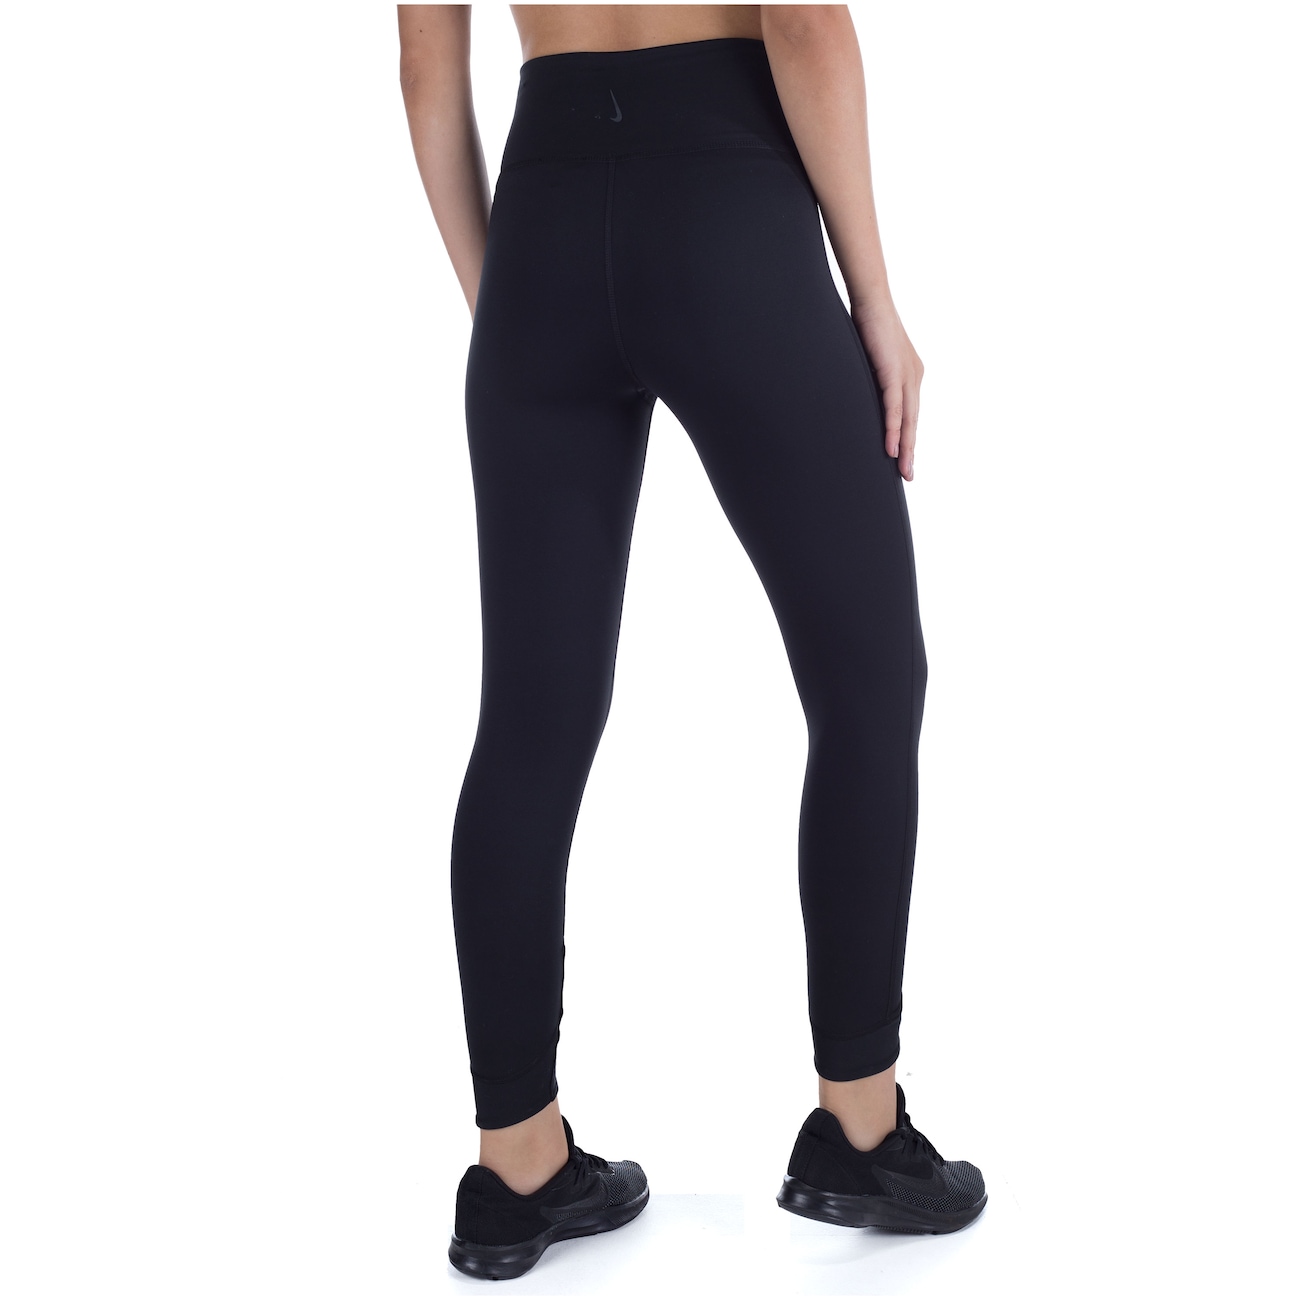 Legging Nike Yoga Core Collection 7/8 Tight Preta - Compre Agora